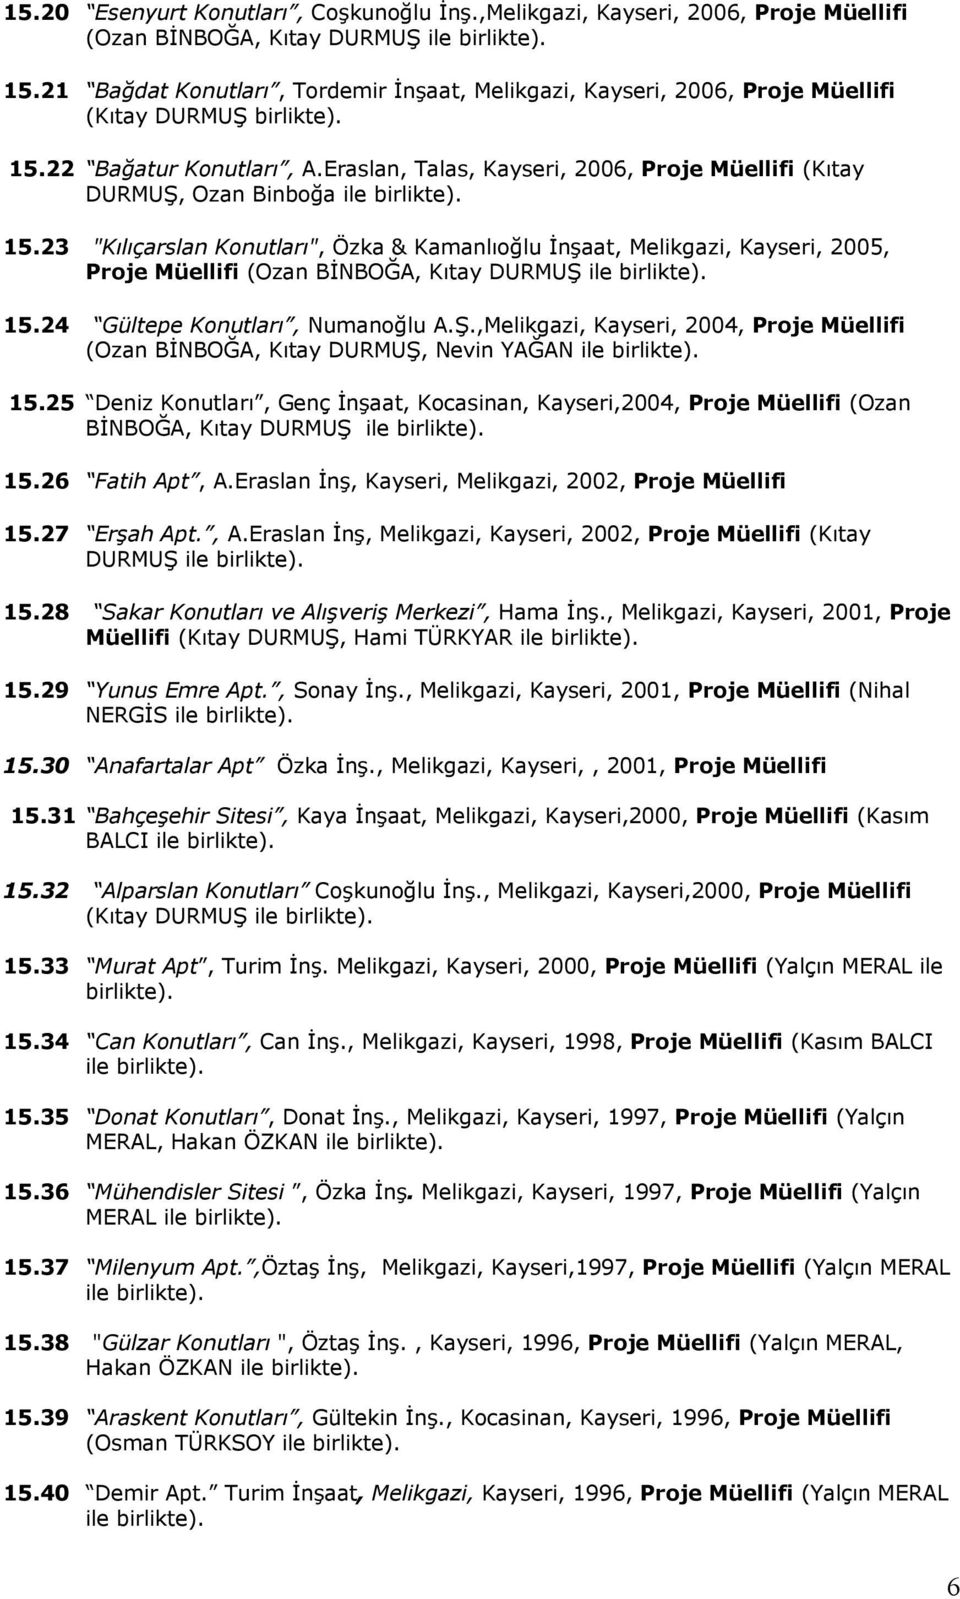 Eraslan, Talas, Kayseri, 2006, Proje Müellifi (Kıtay DURMUŞ, Ozan Binboğa ile 15.